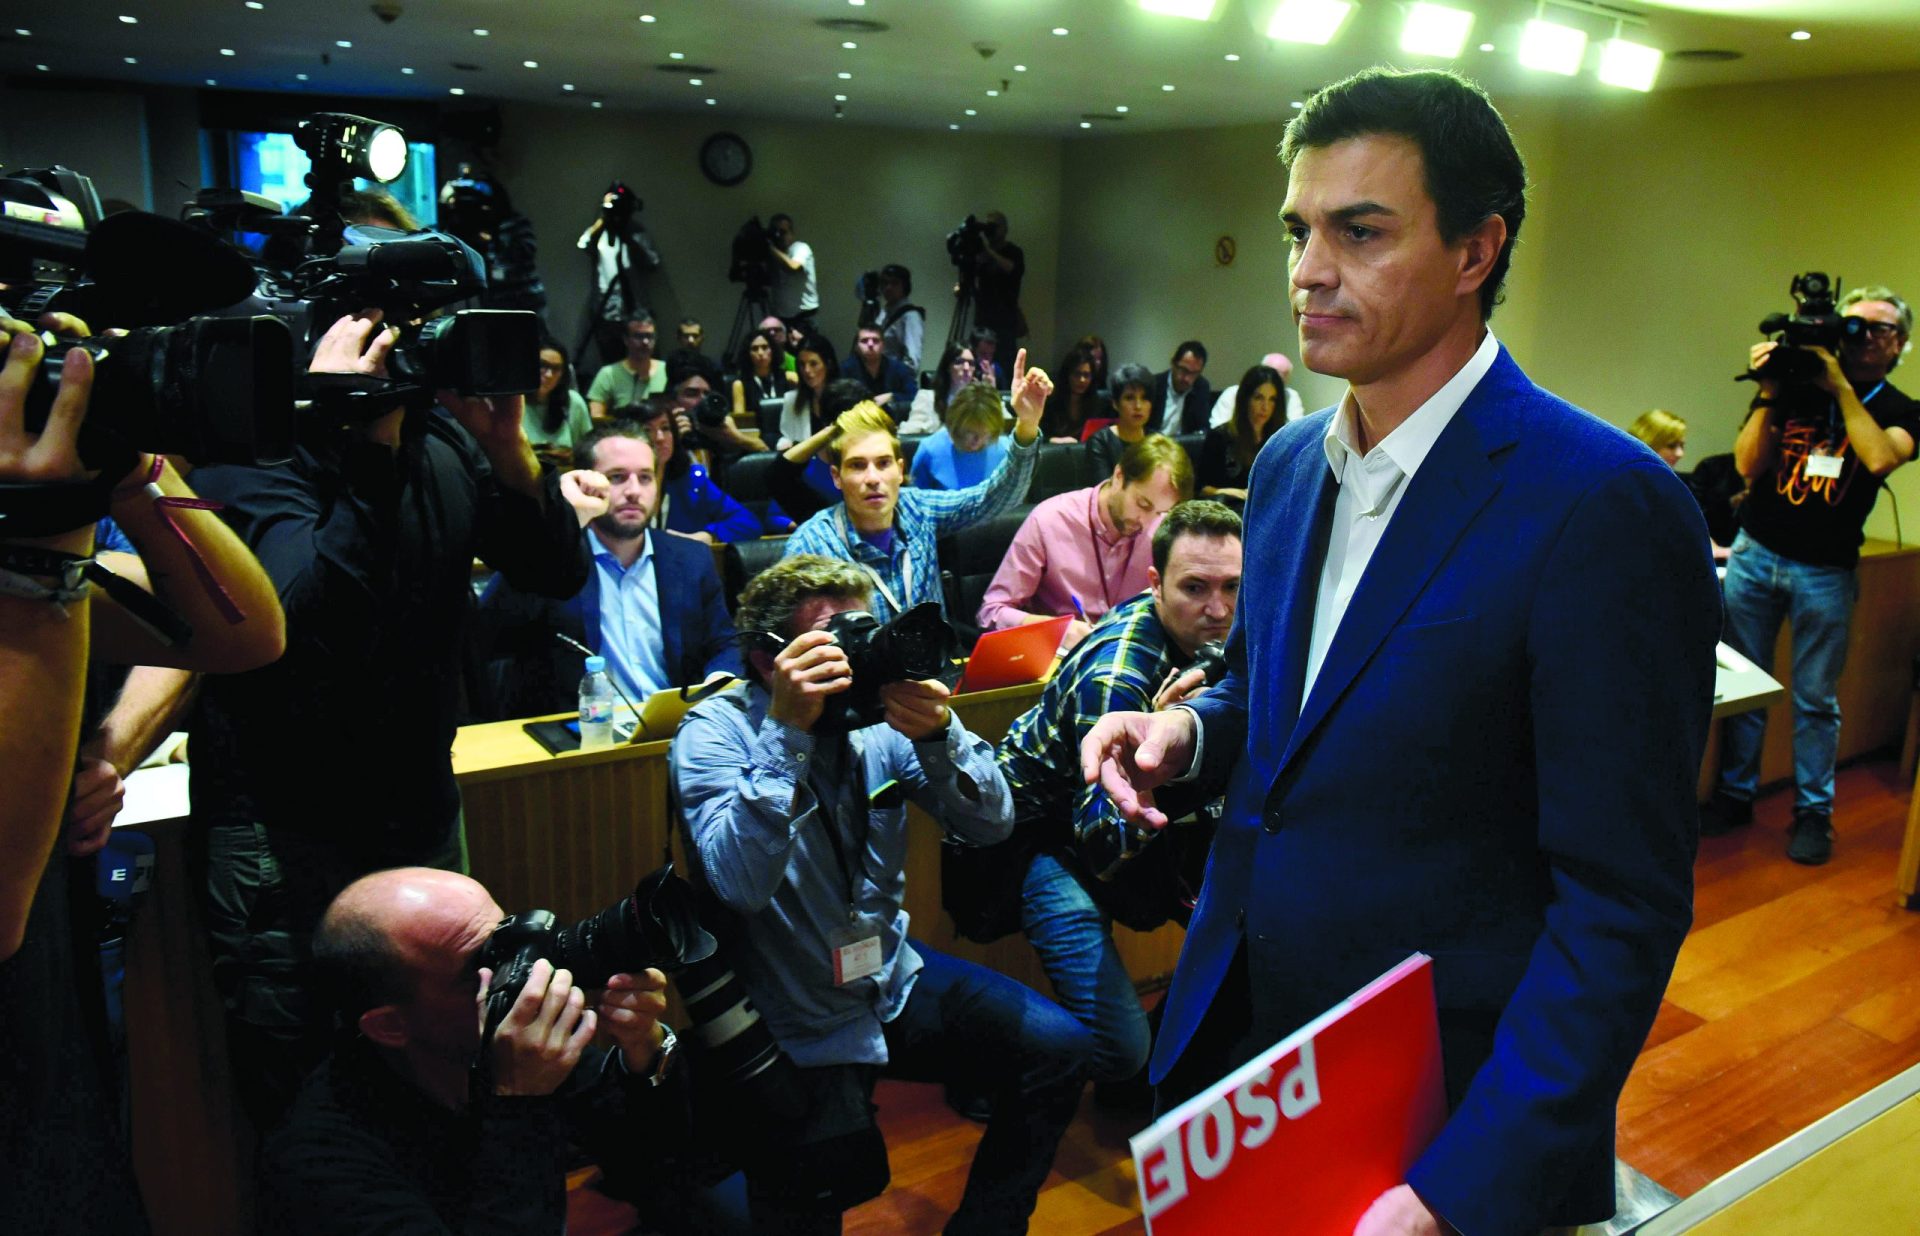 Sánchez acusa “El País” de ter conspirado contra governo de esquerda